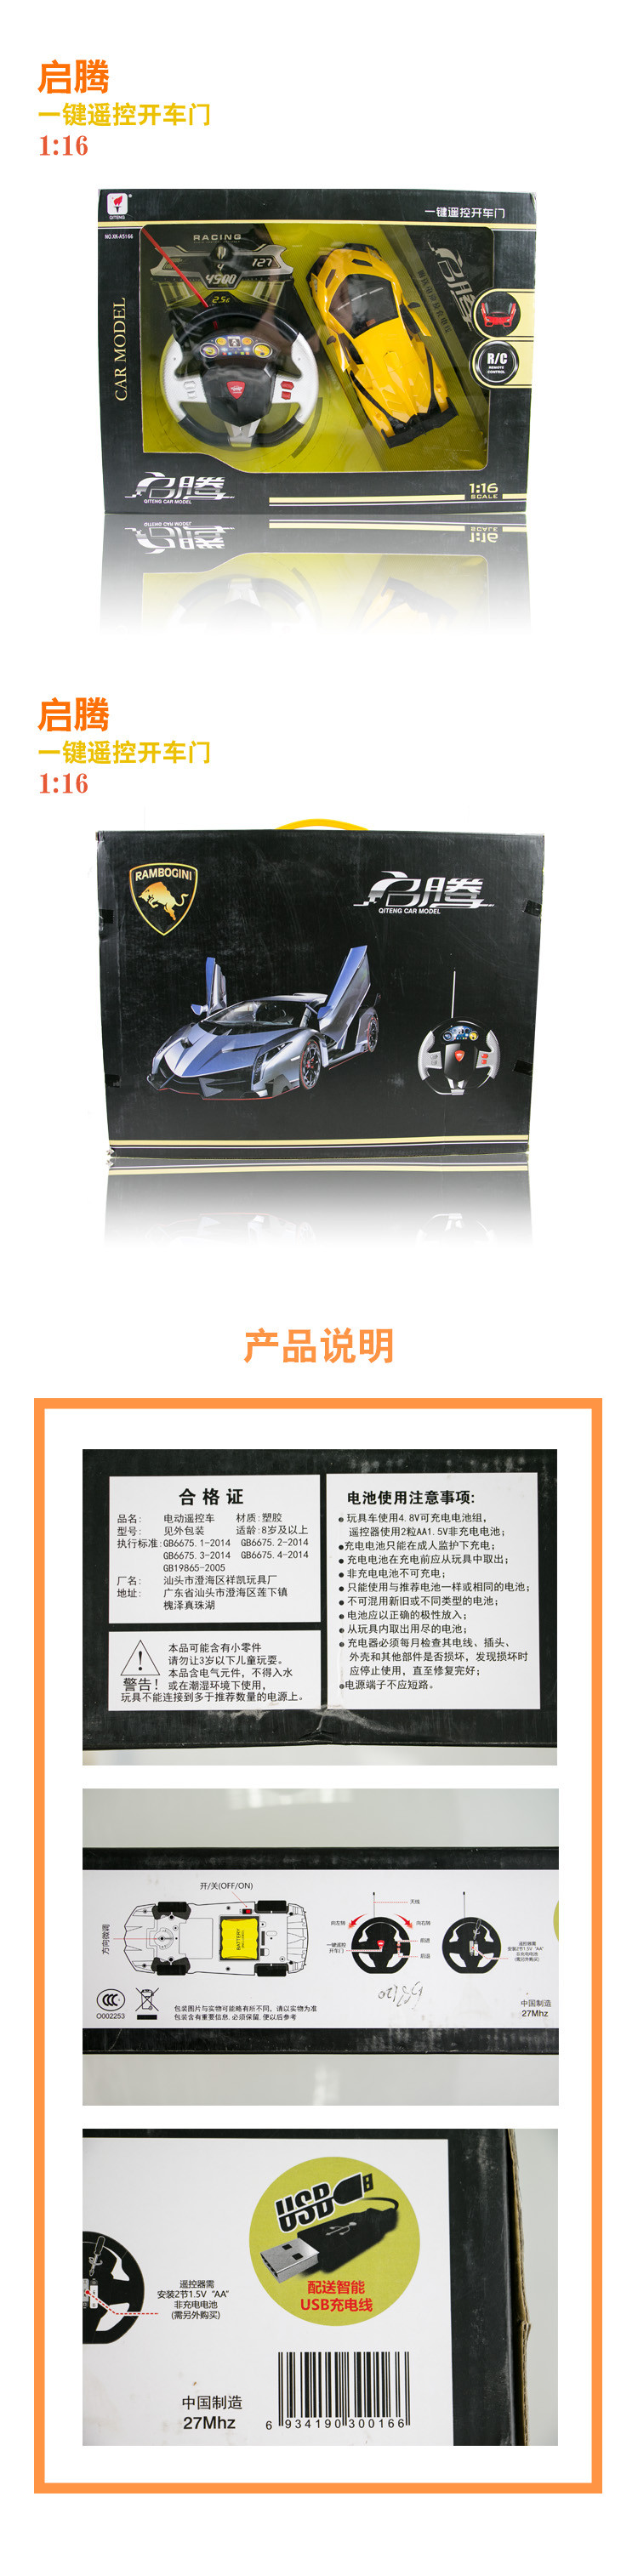 邮乐萍乡馆启腾XK-A5166黄色电动 摇控车儿童玩具男孩玩具车带充电电池遥控器非充电电池需另购